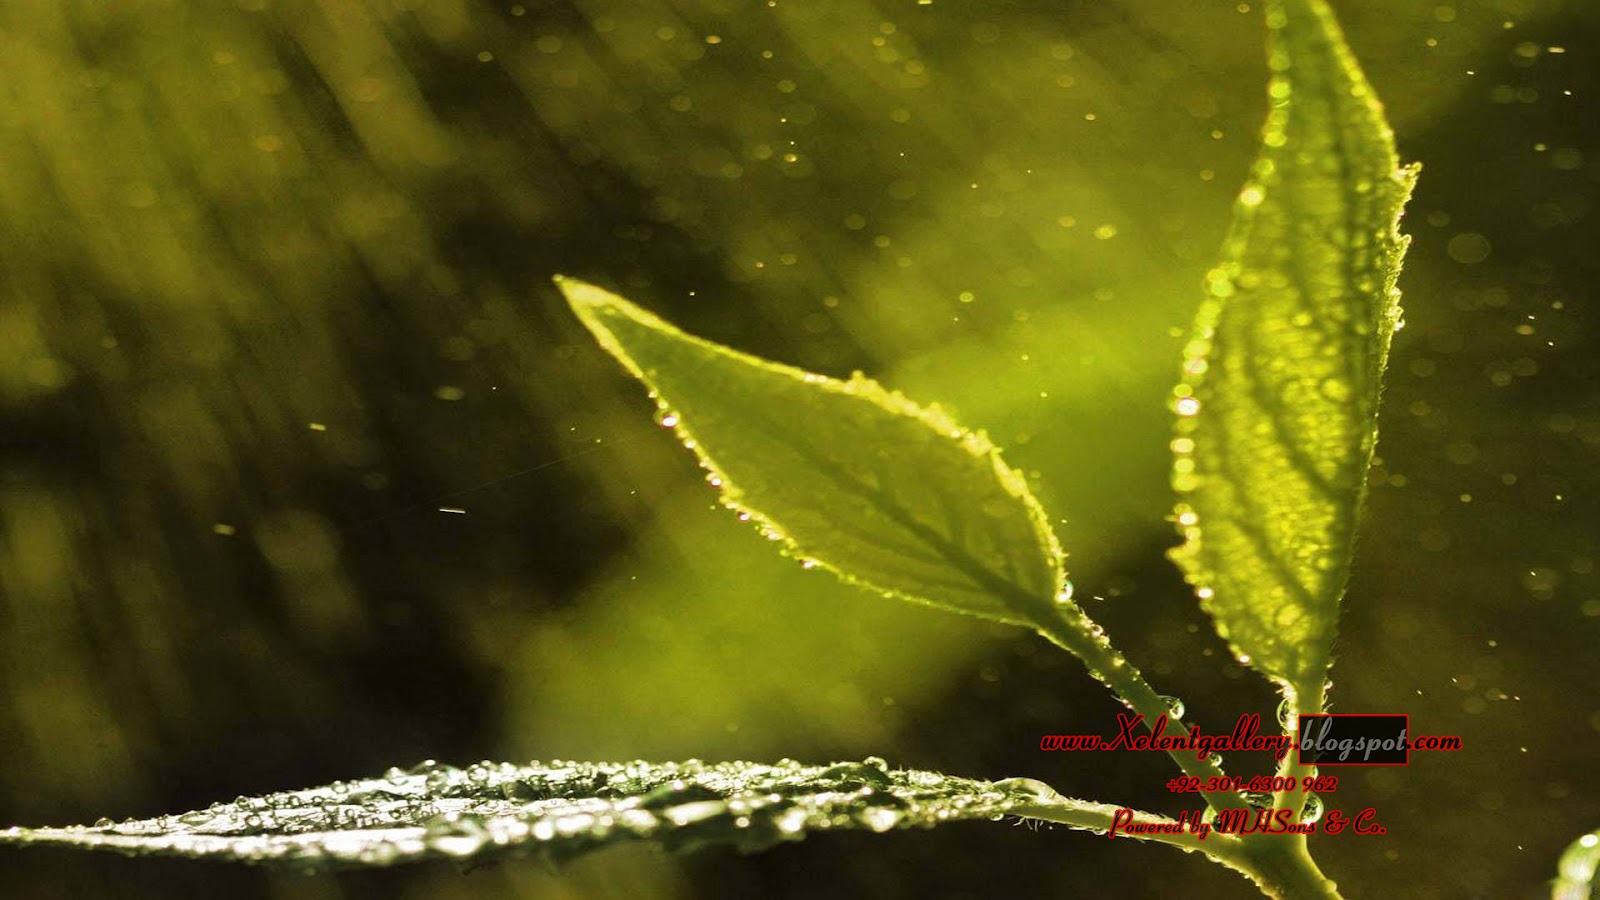 梅雨のhdの壁紙,水,自然,緑,葉,マクロ撮影